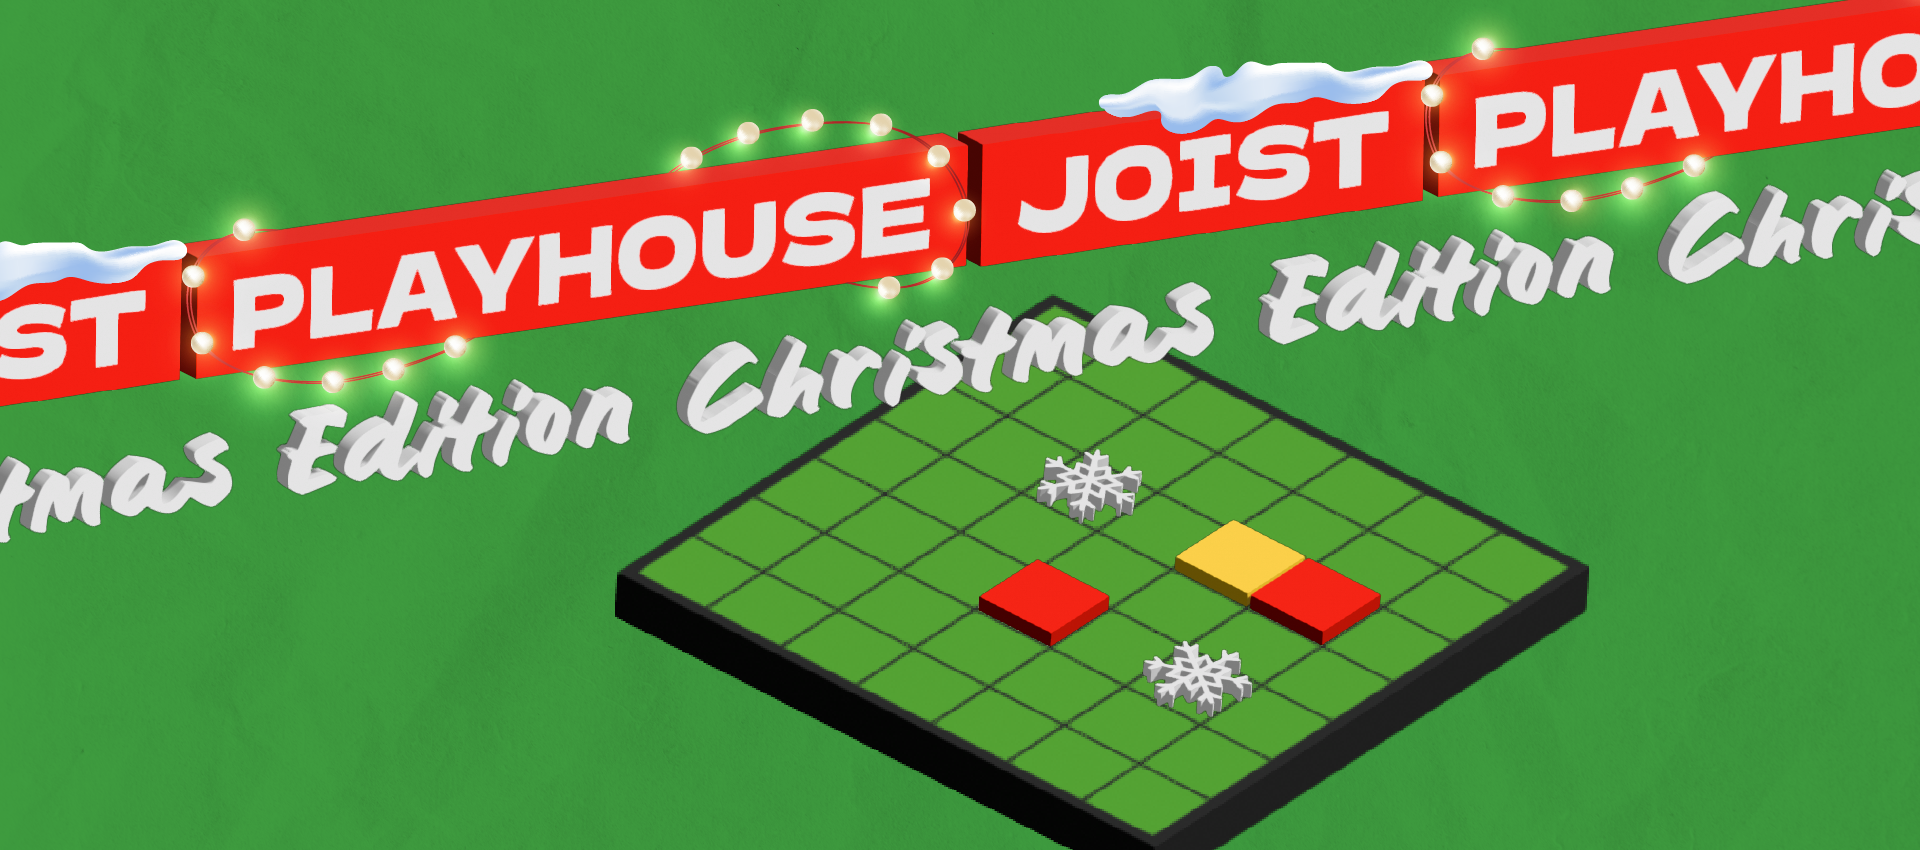 to-playhouse-paei-joist-christmas-edition